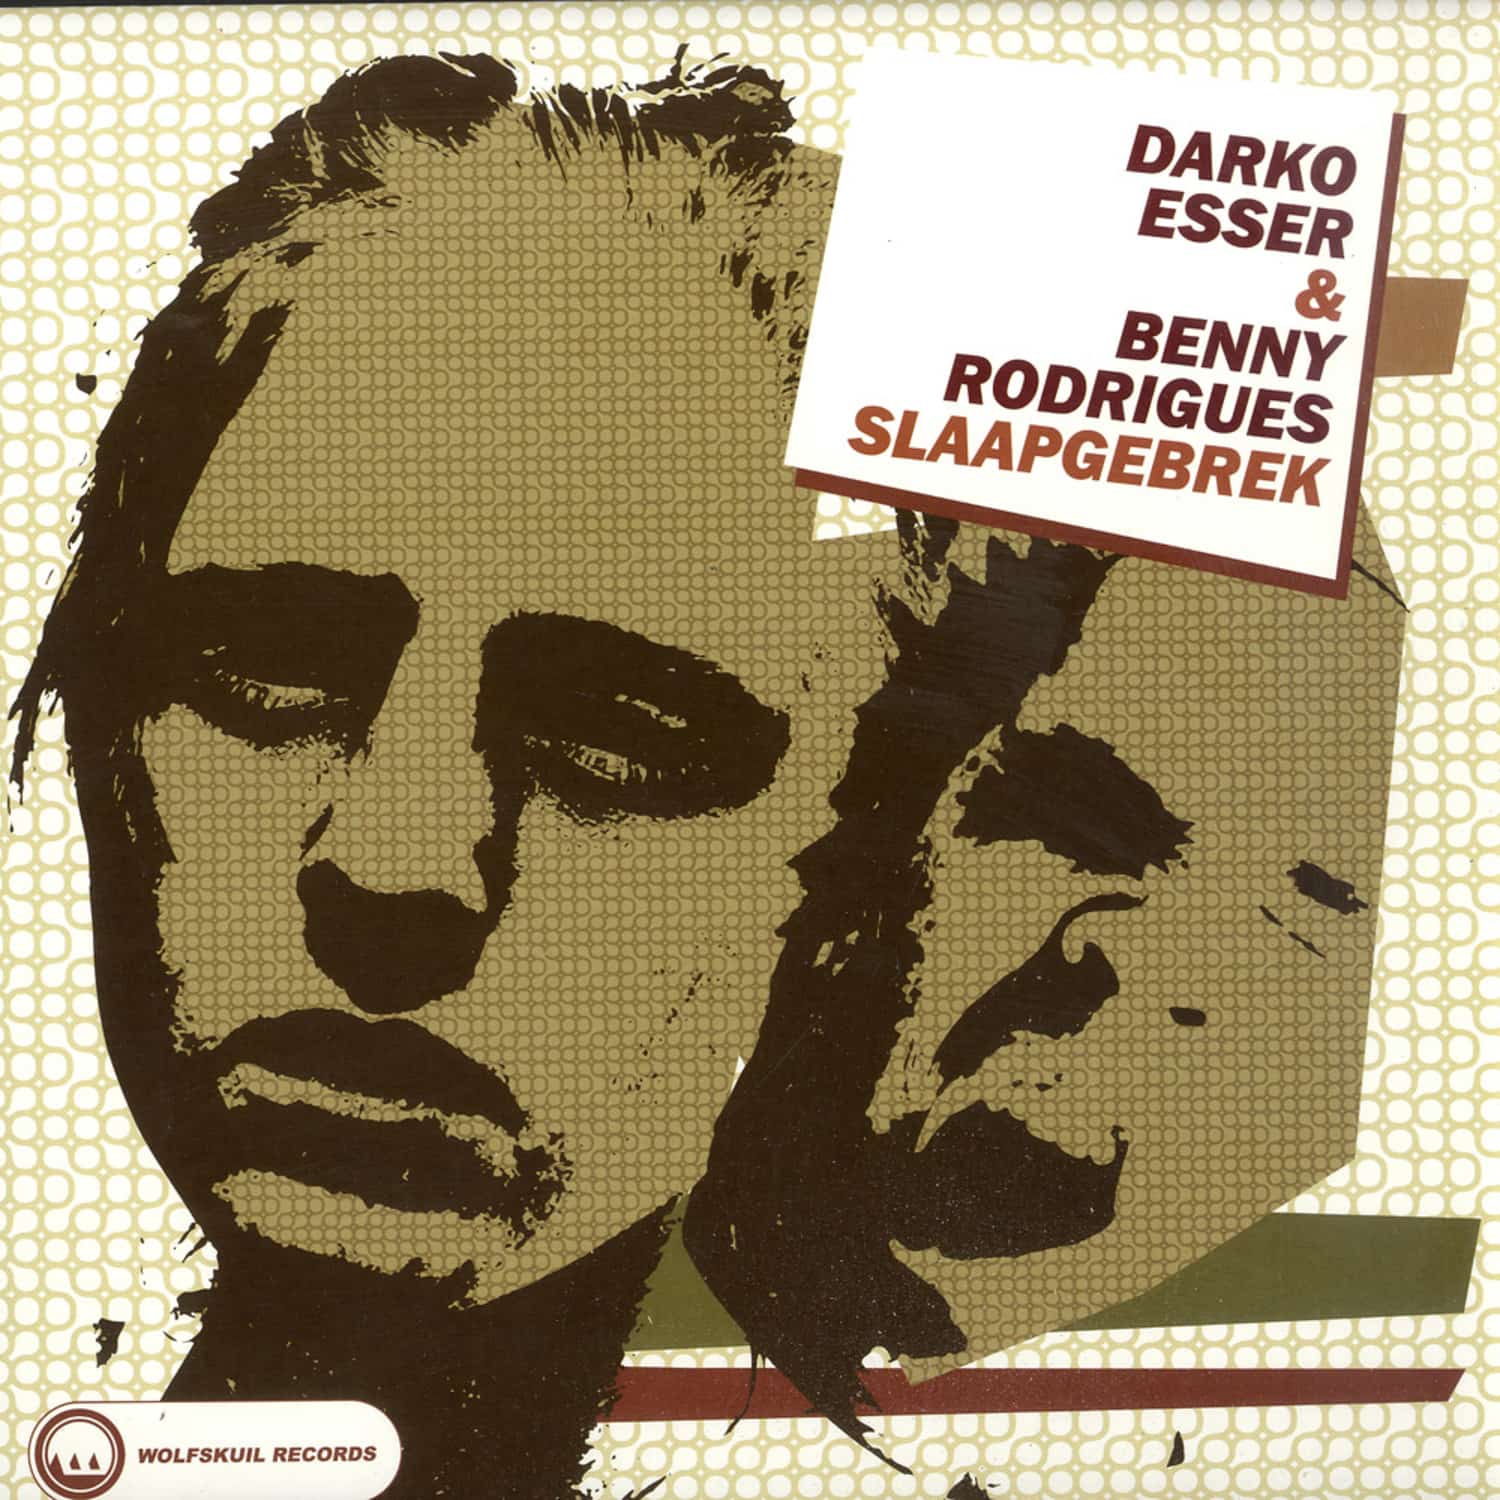 Darko Esser & Benny Rodriguez - SLAAPGEBREK